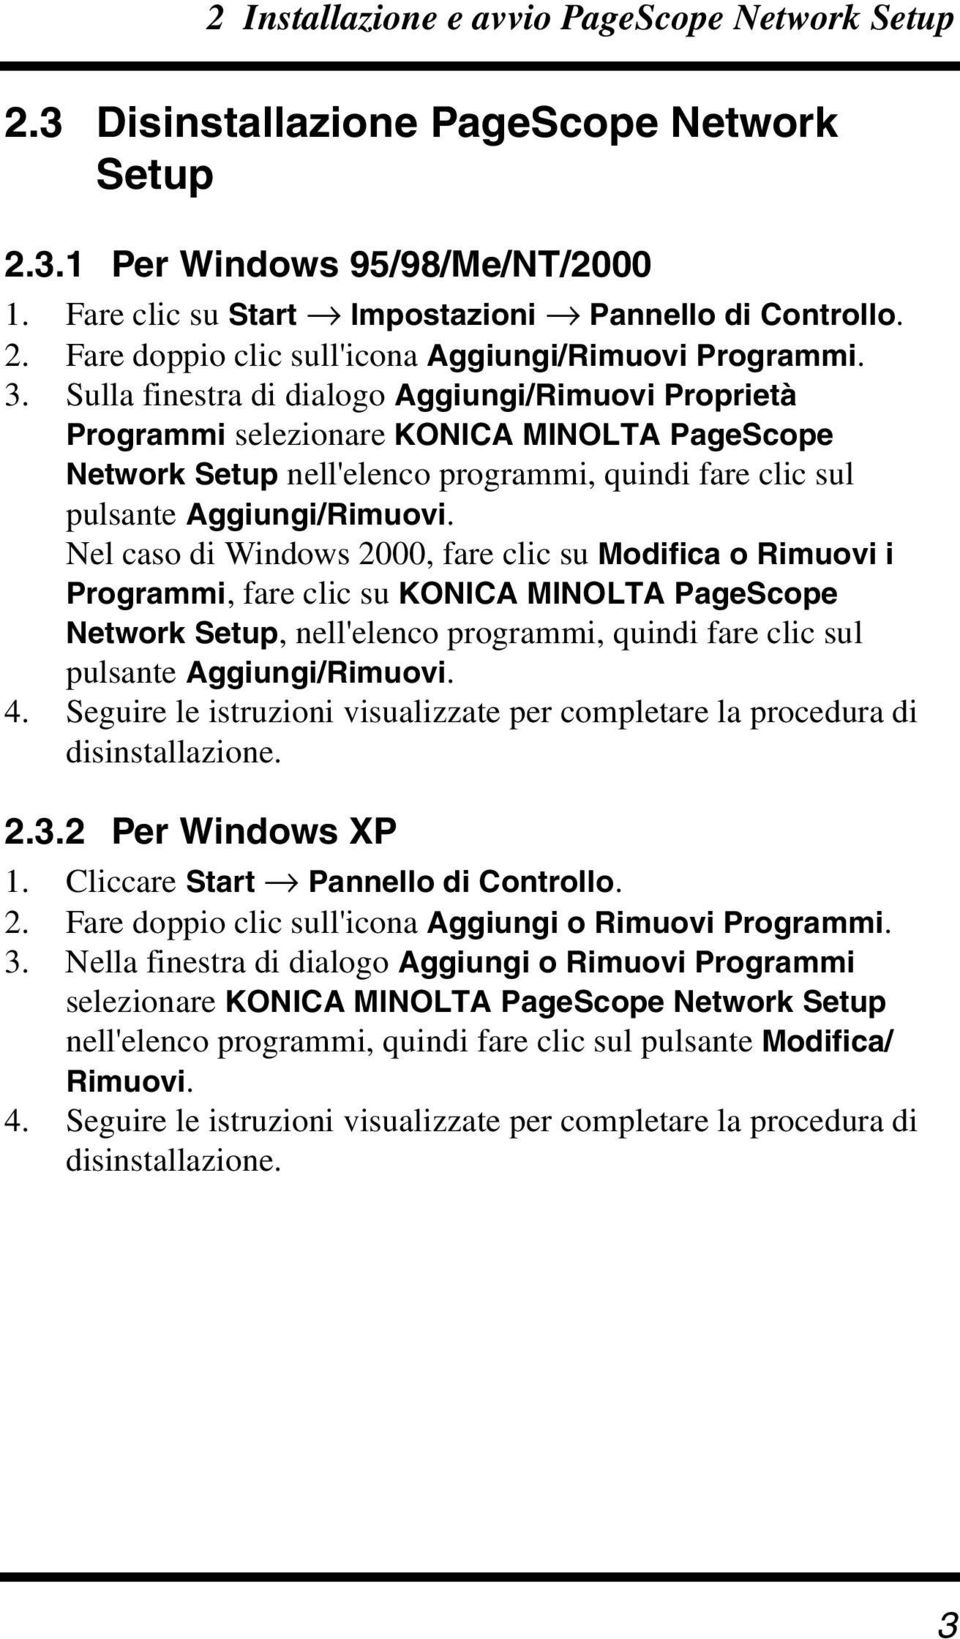 Nel caso di Windows 2000, fare clic su Modifica o Rimuovi i Programmi, fare clic su KONICA MINOLTA PageScope Network Setup, nell'elenco programmi, quindi fare clic sul pulsante Aggiungi/Rimuovi. 4.